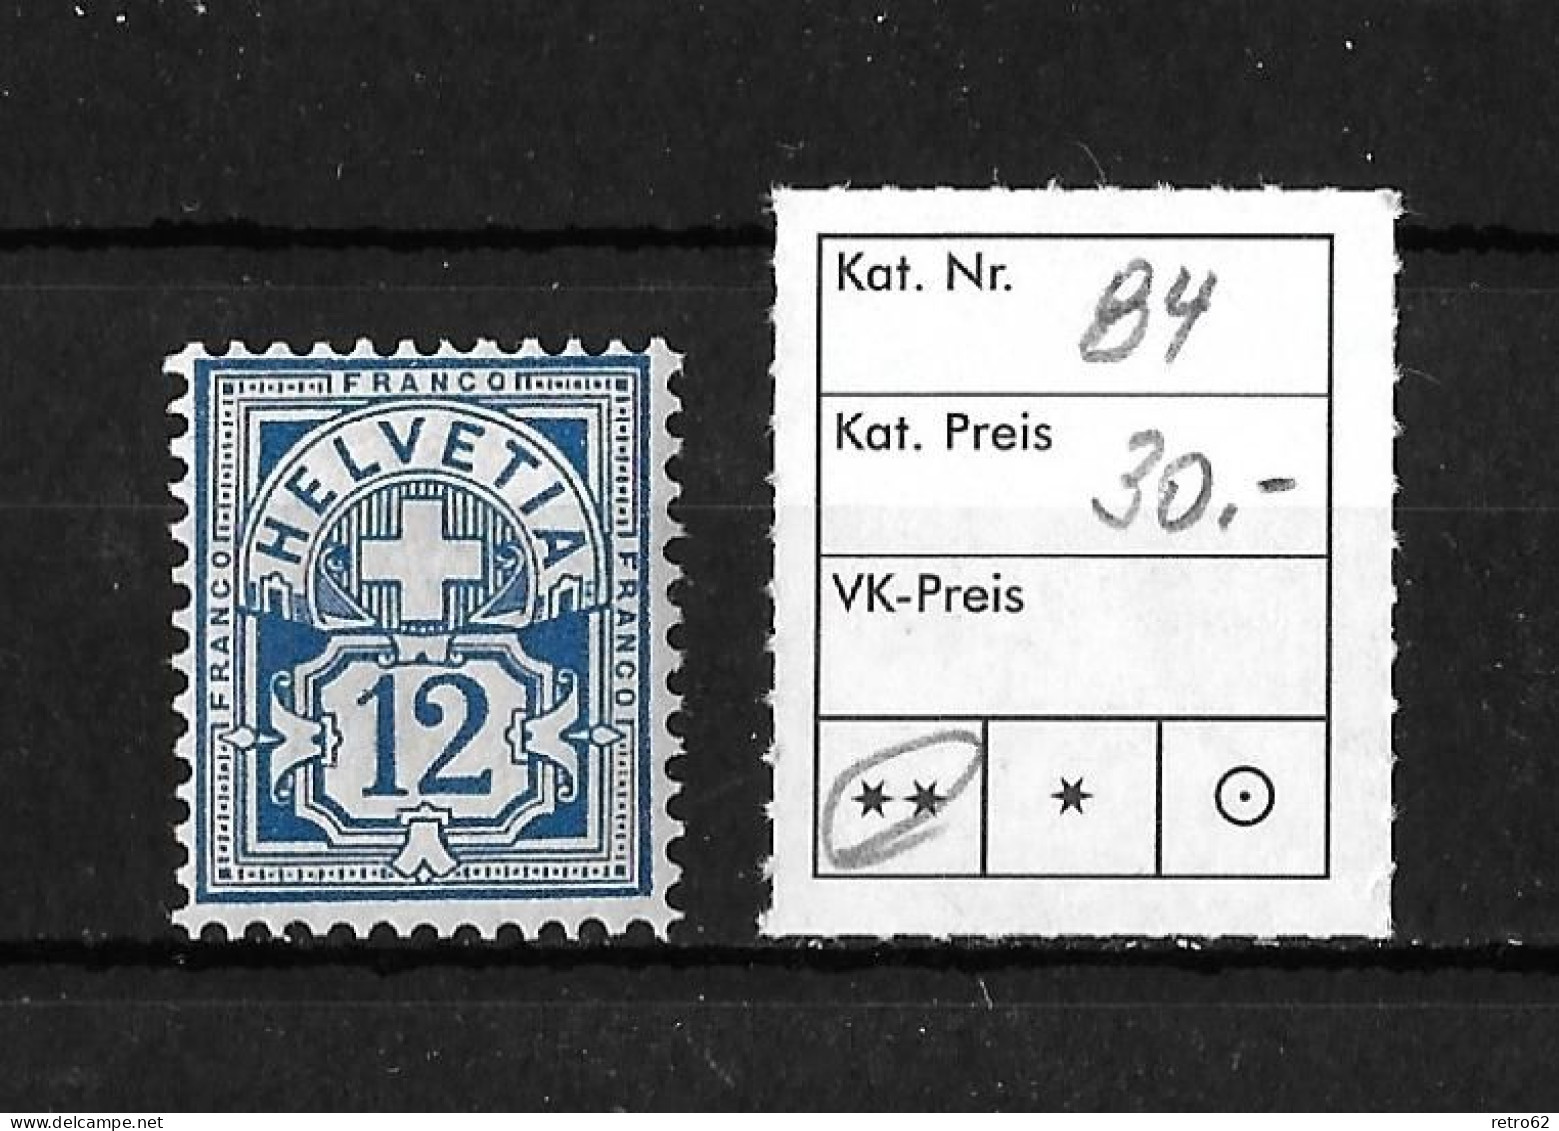 1906  ZIFFERMUSTER  Faserpapier Mit Wasserzeichen    ►SBK-84**◄ - Unused Stamps